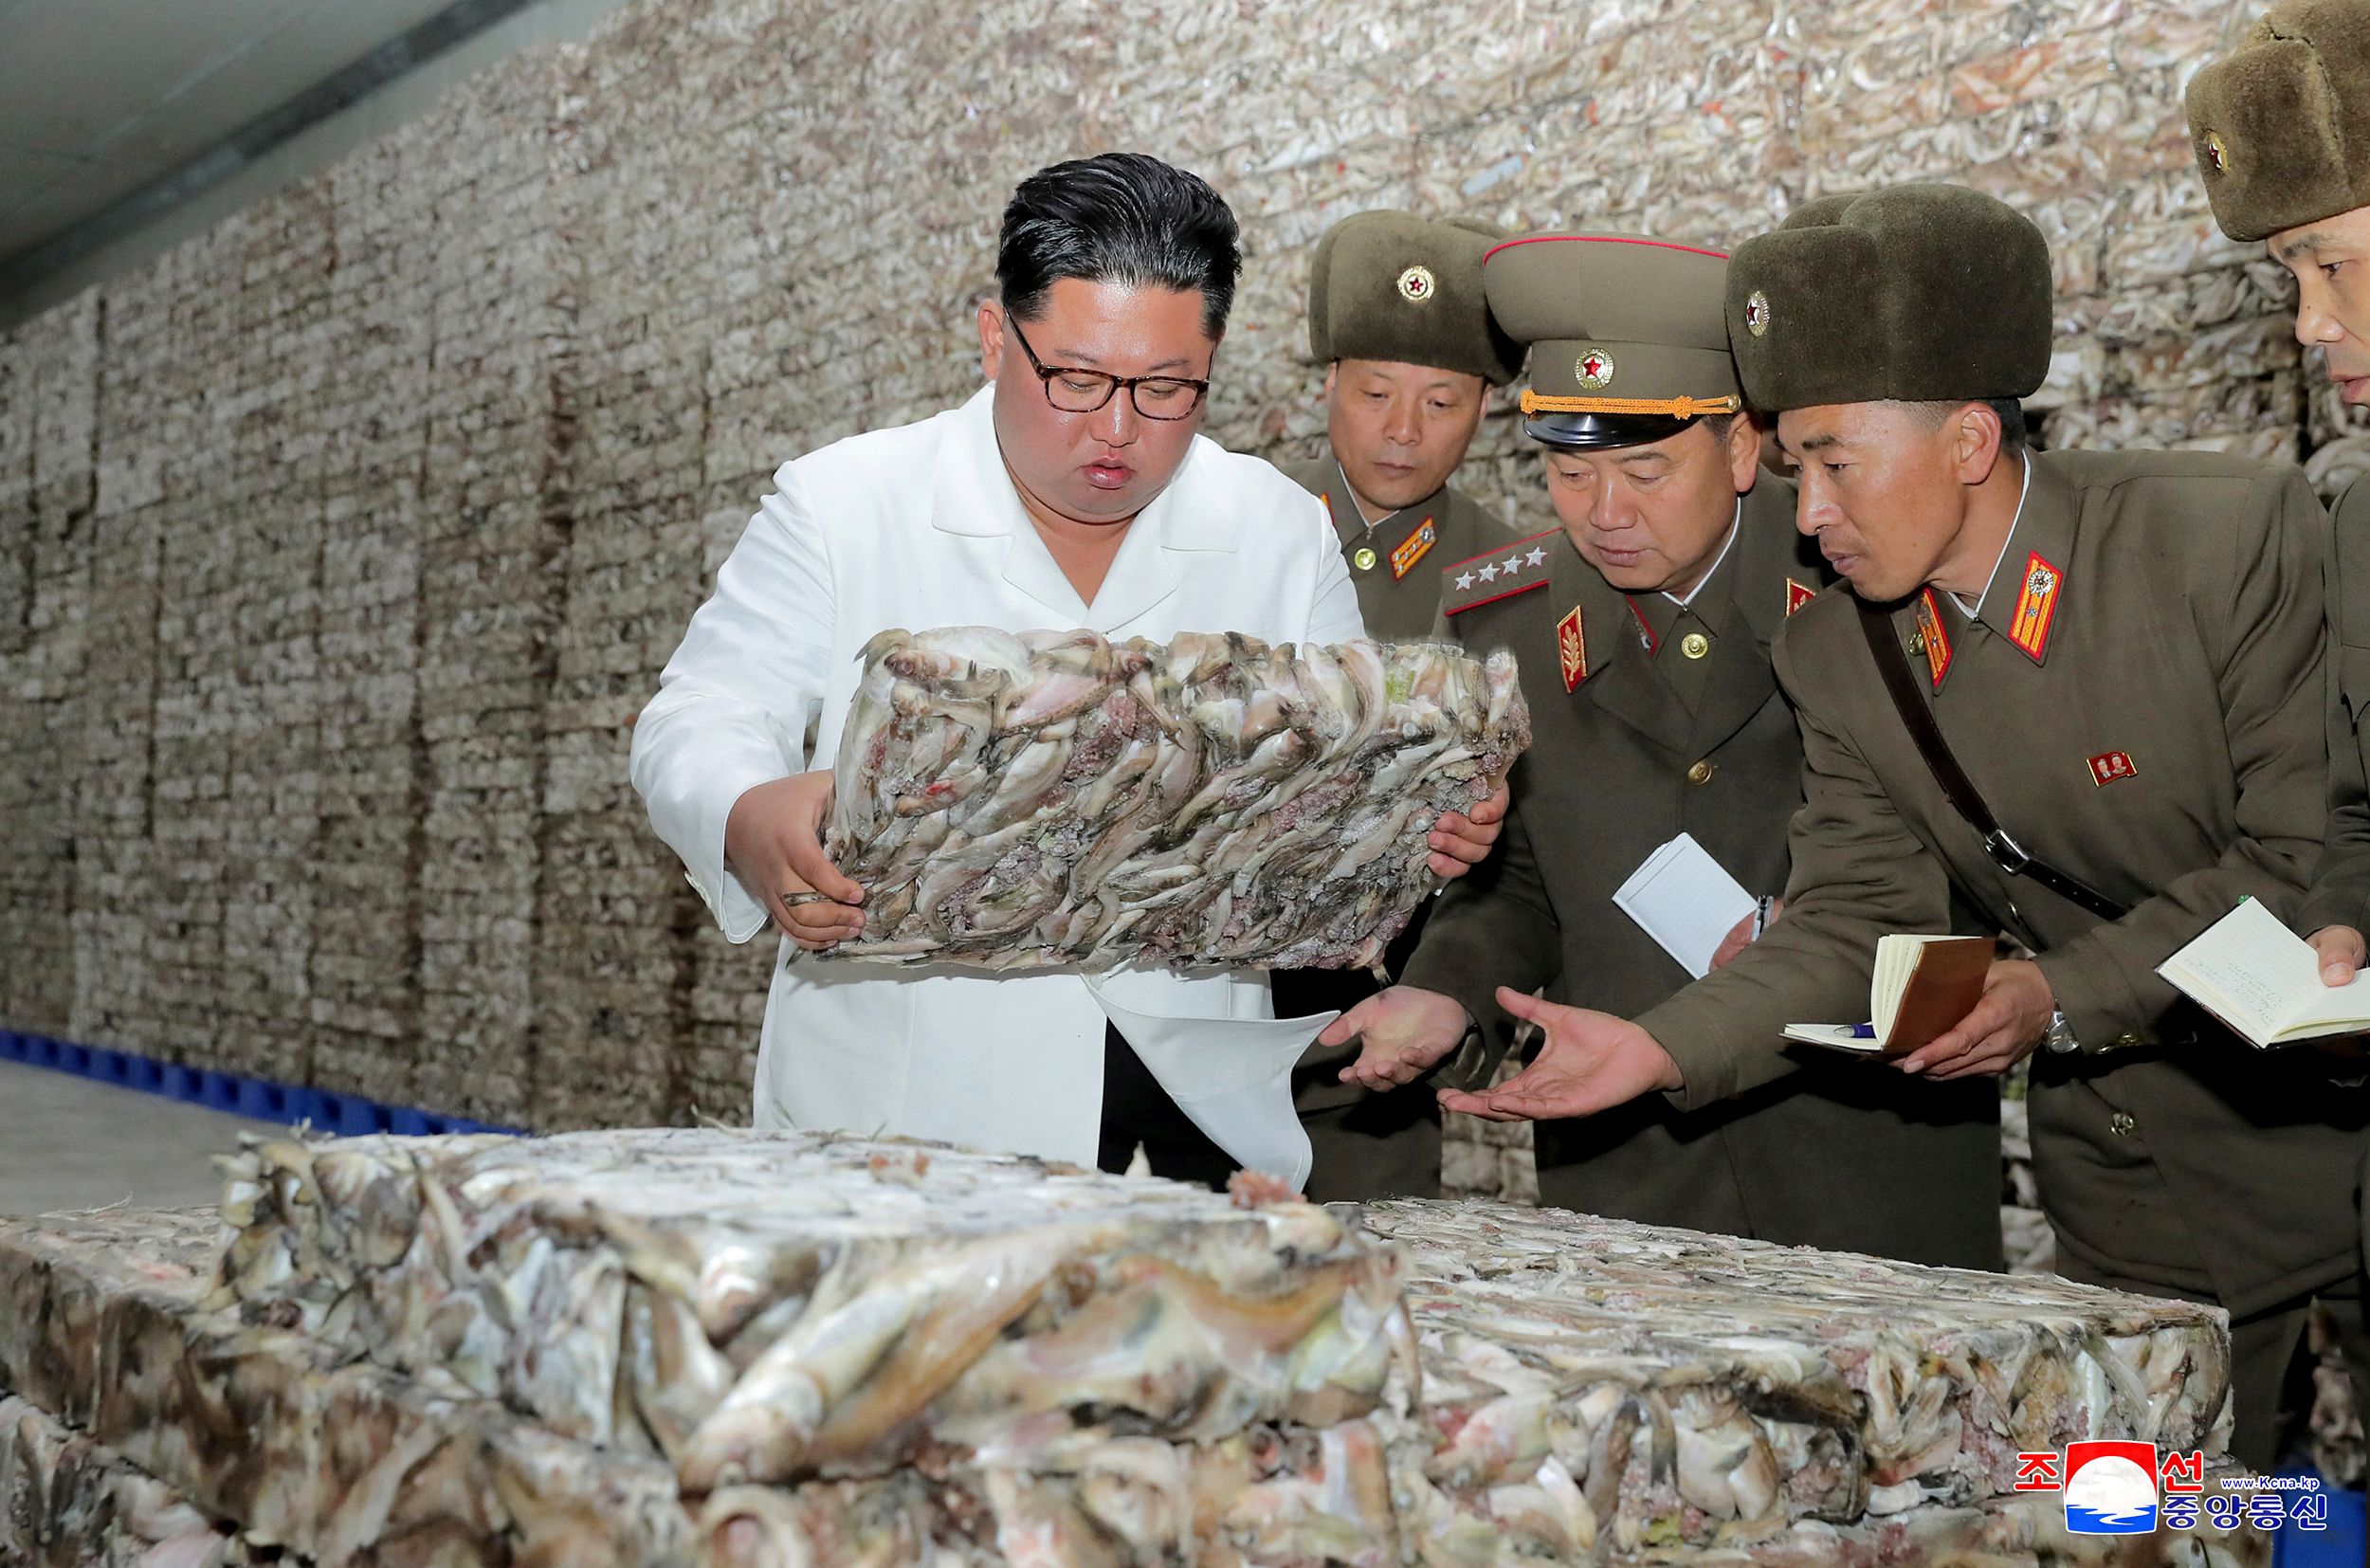 El líder norcoreano Kim Jong Un visita una instalación de procesamiento de pescado en Corea del Norte, en esta imagen sin fecha publicada por la Agencia Central de Noticias de Corea del Norte (KCNA) el 18 de noviembre de 2019. (KCNA a través de Reuters/archivo)